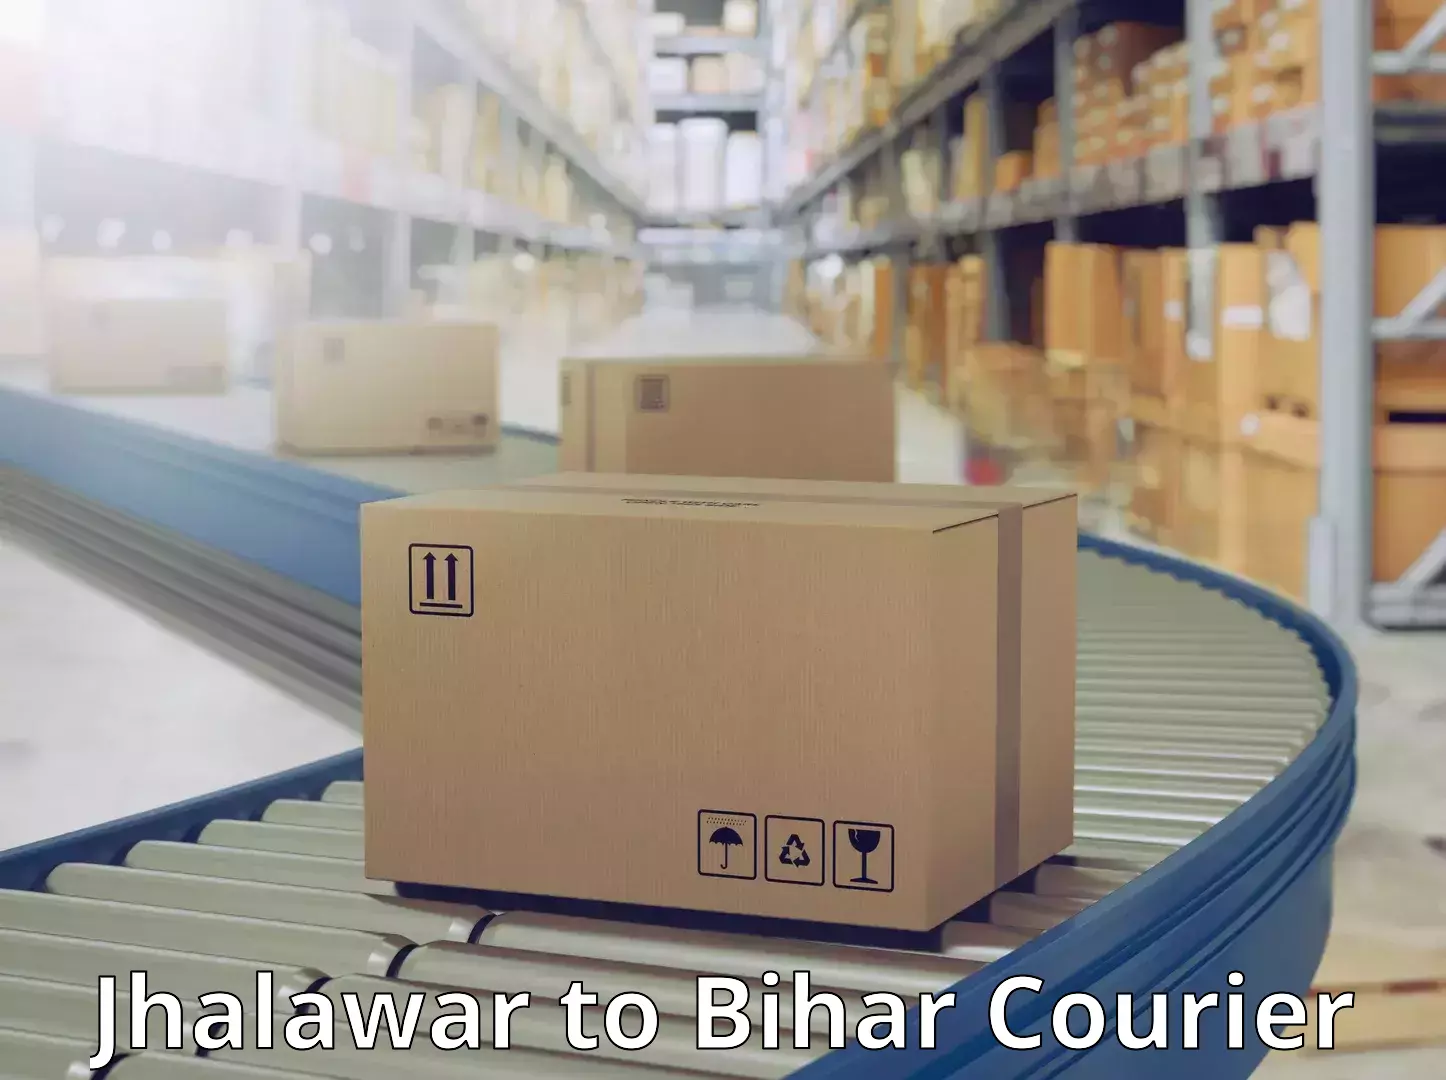 Express logistics Jhalawar to Bihar